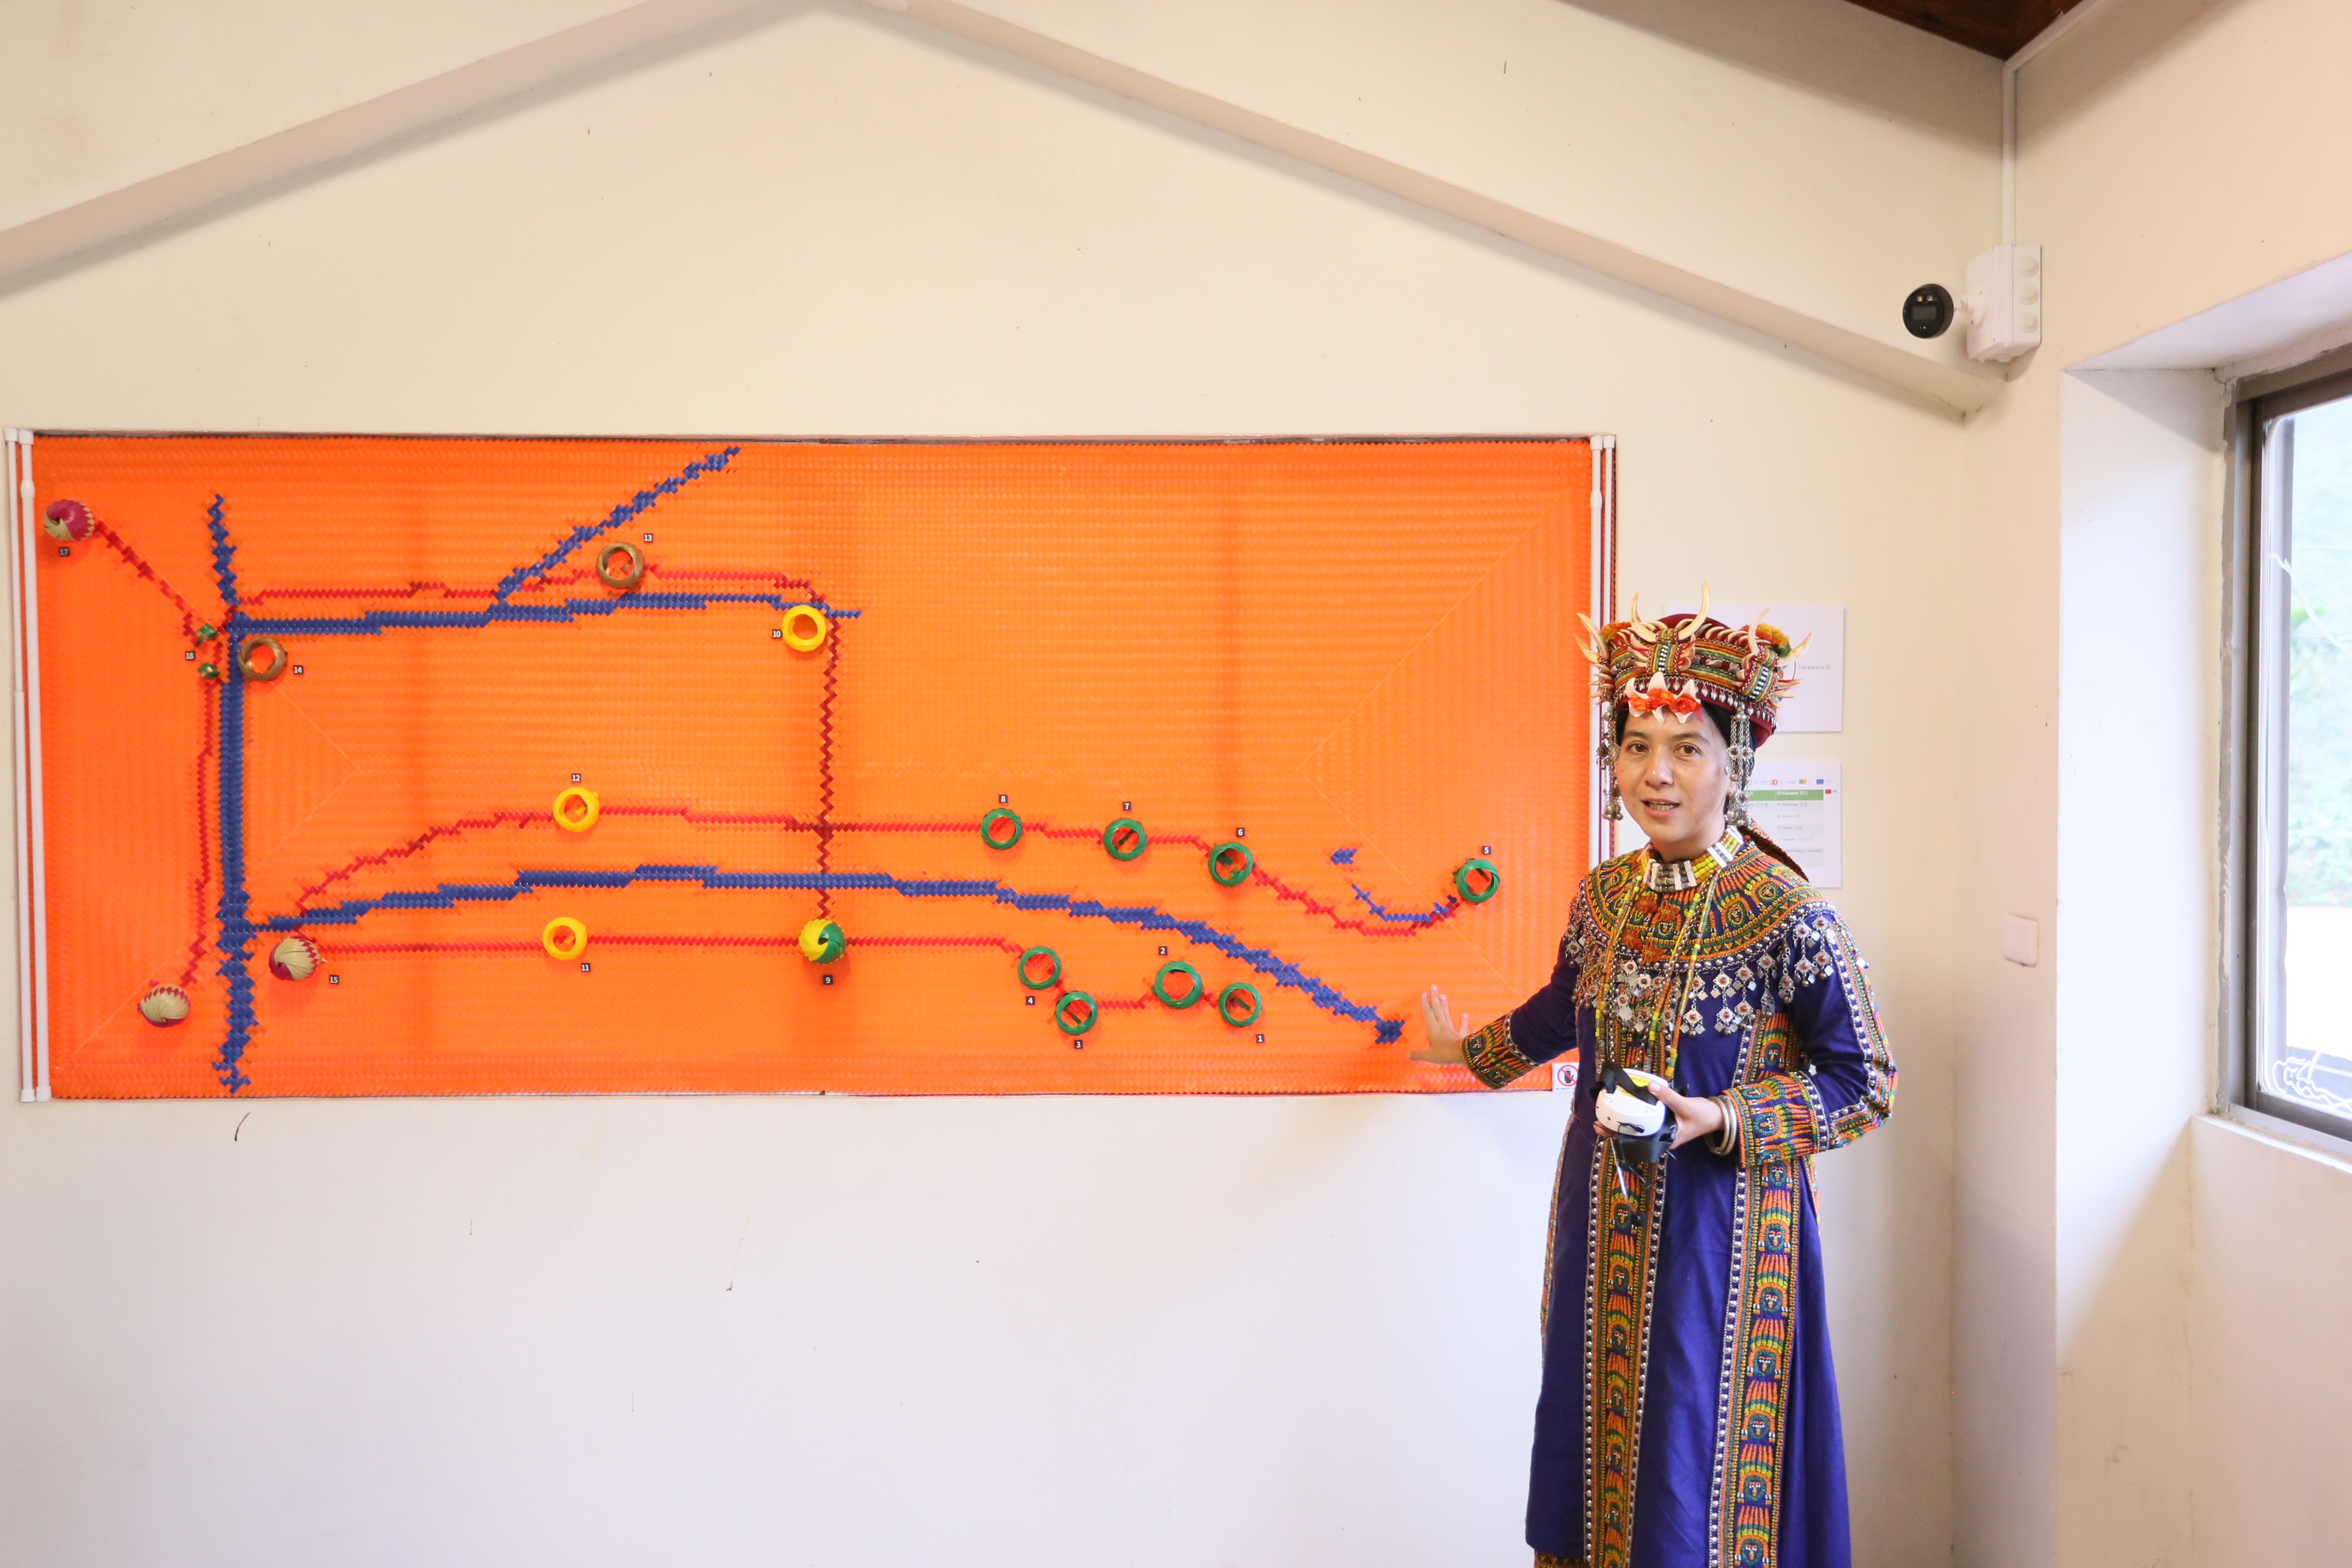 策展人貝若桑．甦給那笛米介紹族人用塑膠打包帶編織而成的「貿易之路」。